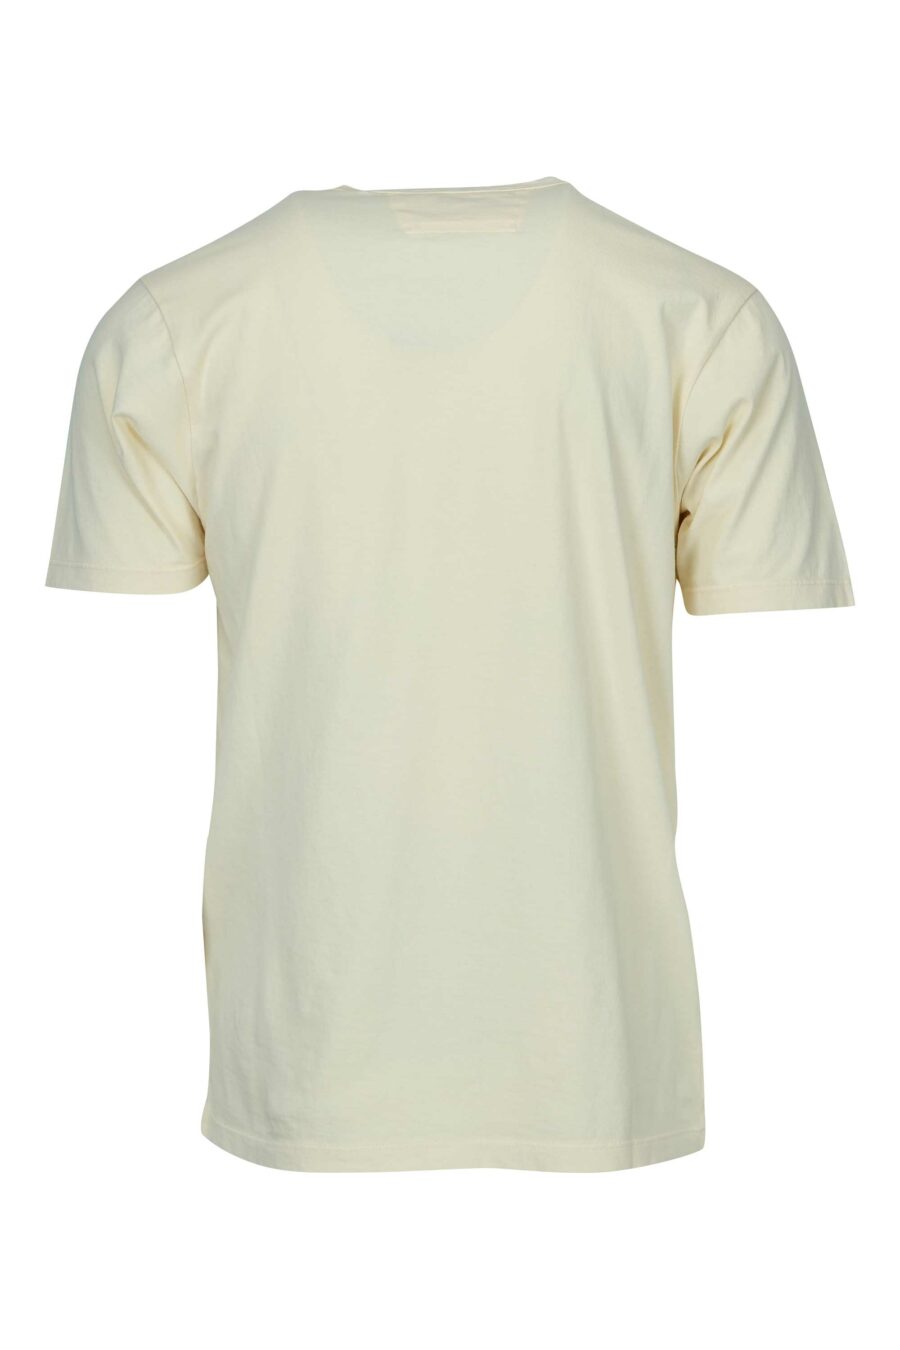 Beigefarbenes T-Shirt mit Taschen und Mini-Logo "cp" - 7620943766882 1